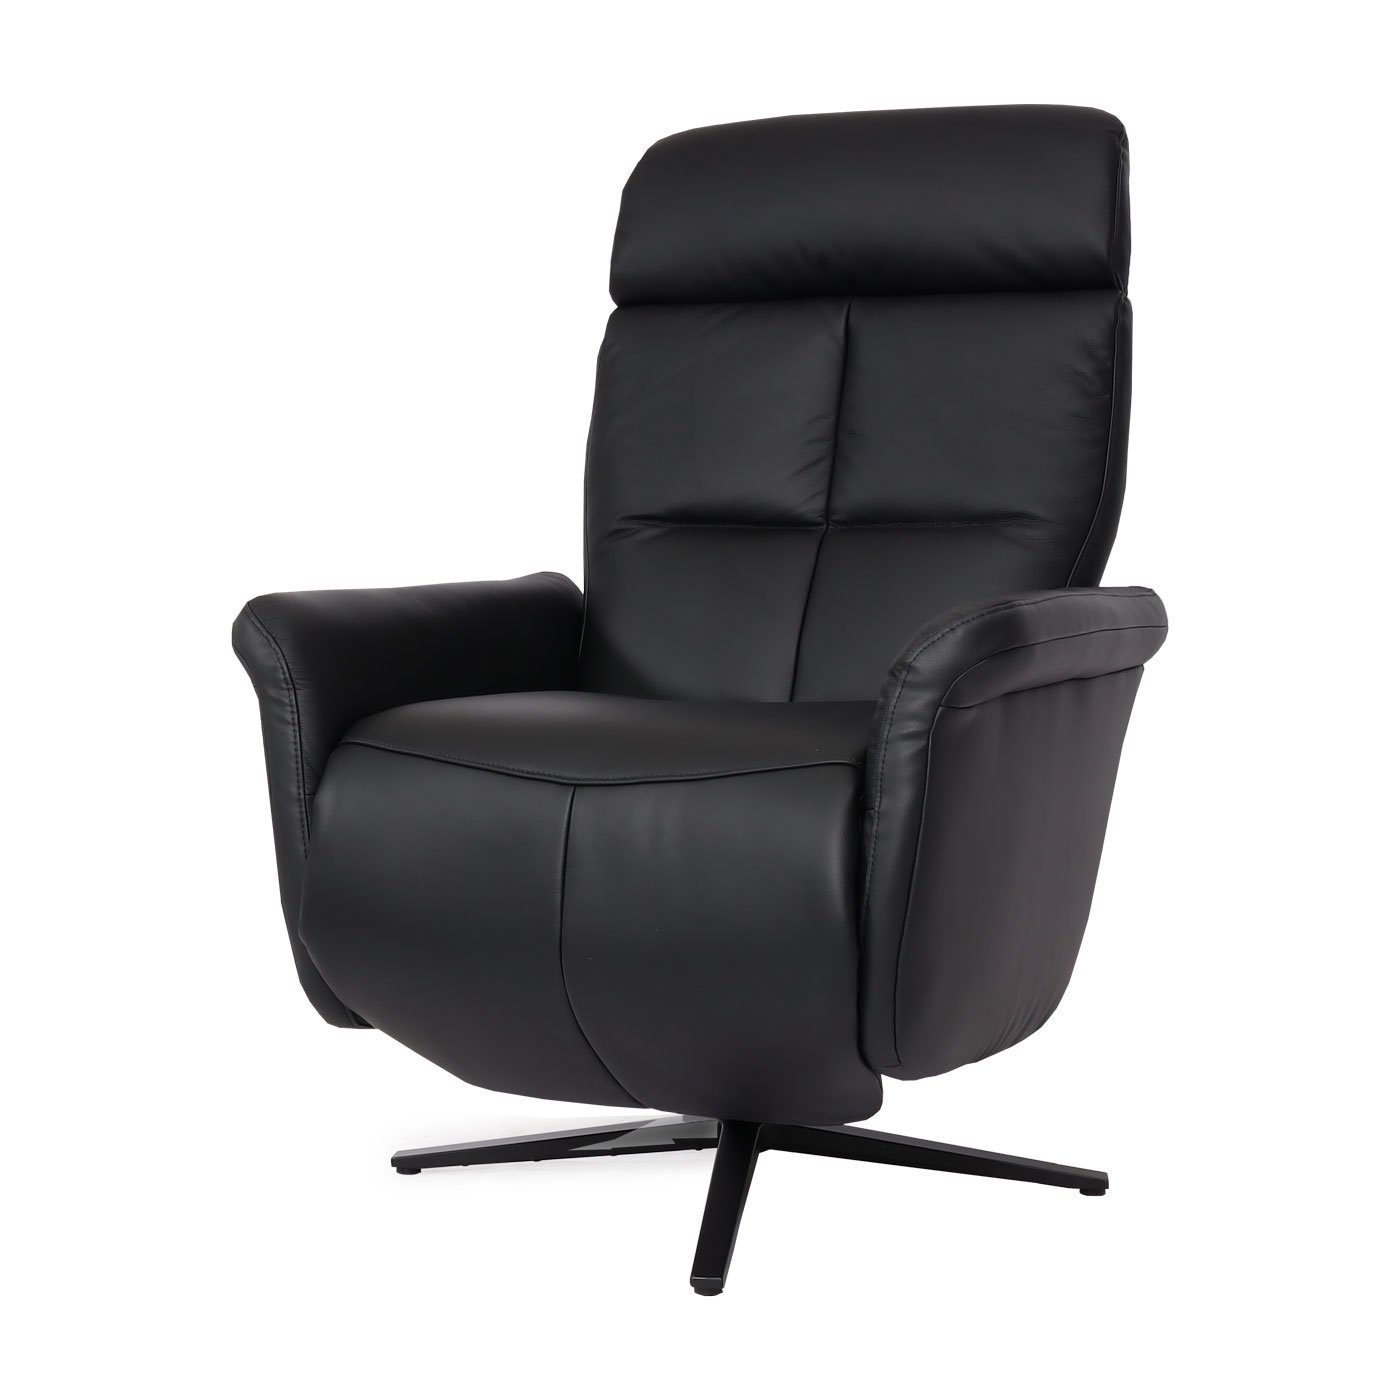 Breite Fußbodenschonern Relaxsessel breiten Armlehnen, | schwarz MCW Sitzfläche, MCW-L10, schwarz